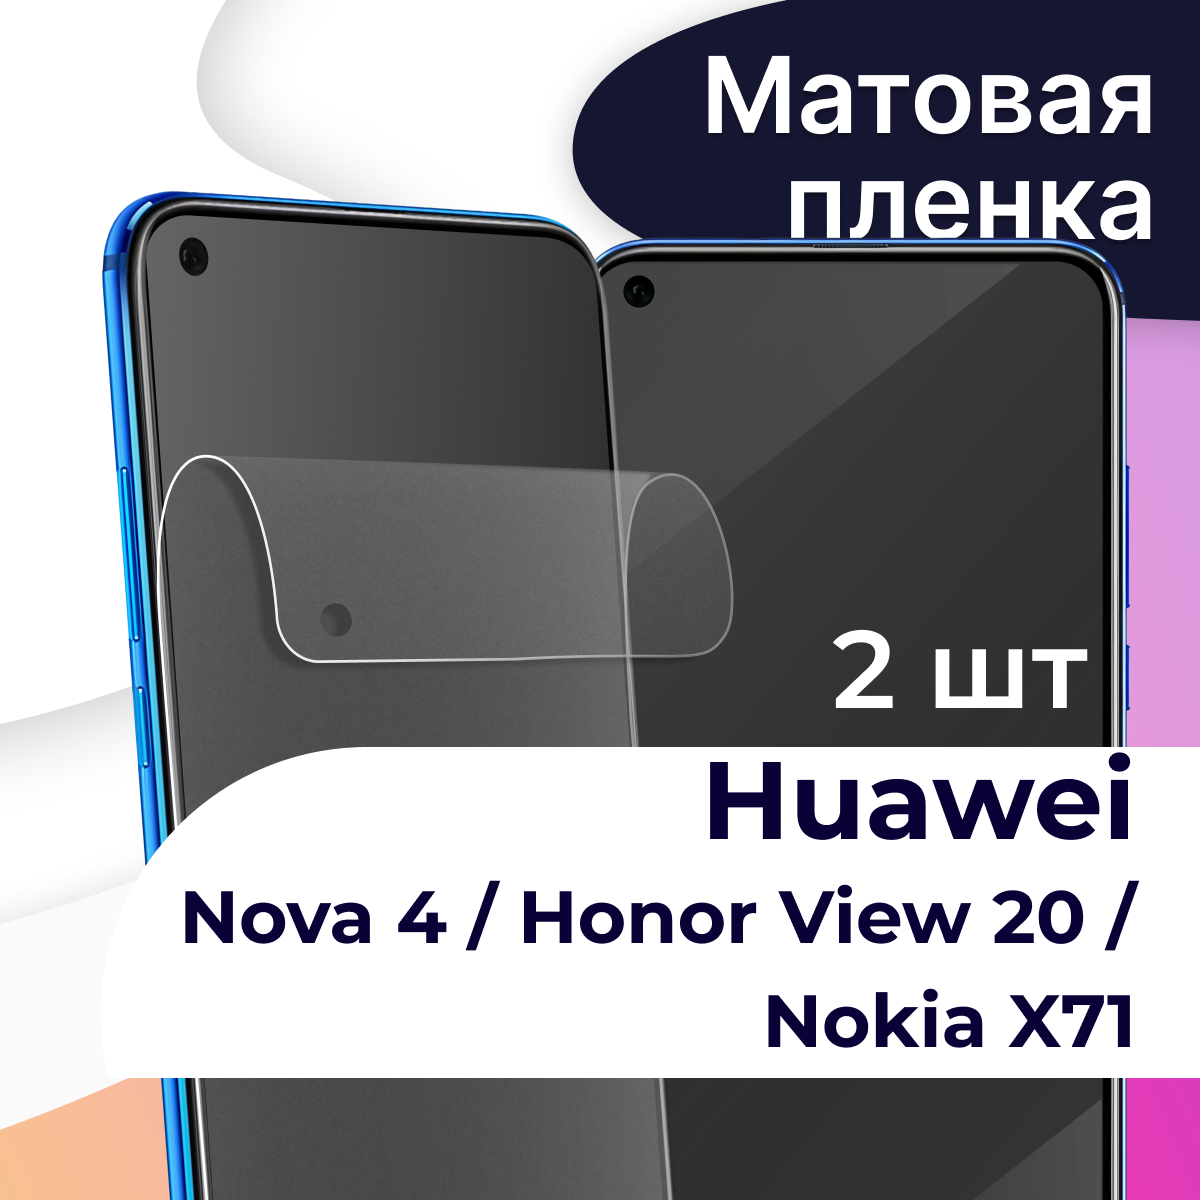 Комплект 2 шт. Матовая пленка на телефон Huawei Nova 4, Honor View 20 и Nokia X71 / Защитная пленка на телефон Хуавей Нова 4, Хонор Вив 20 и Нокиа Х71